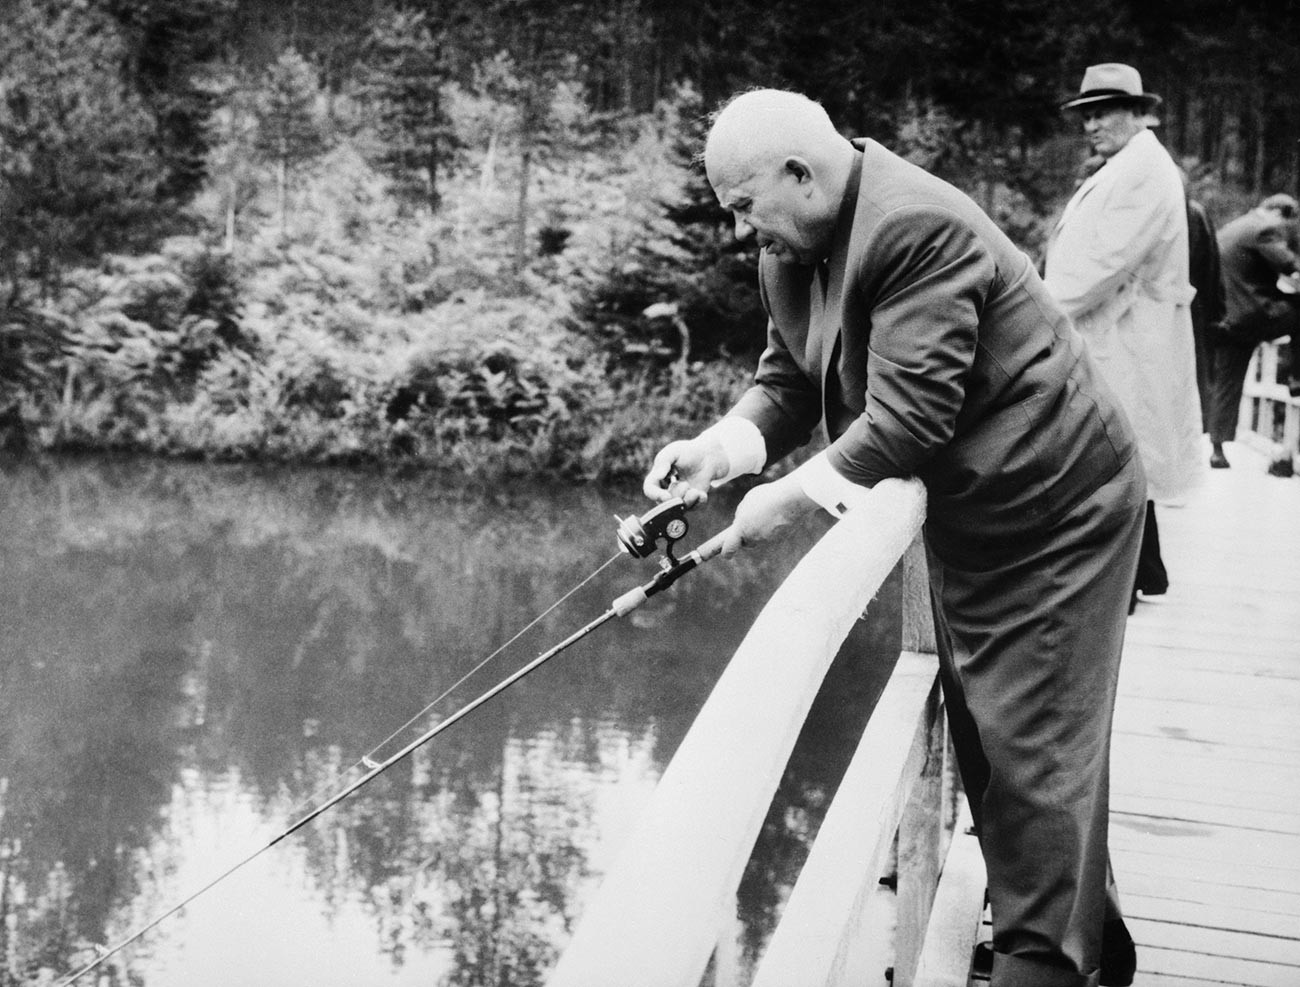 Дубока концентрација. Никита Хрушчов на пецању током 15-дневне посете Југославији. Пре тога је на конференцији за новинаре рекао да су Русија и Југославија отклониле све несугласице и удружиле се у борби против капитализма.